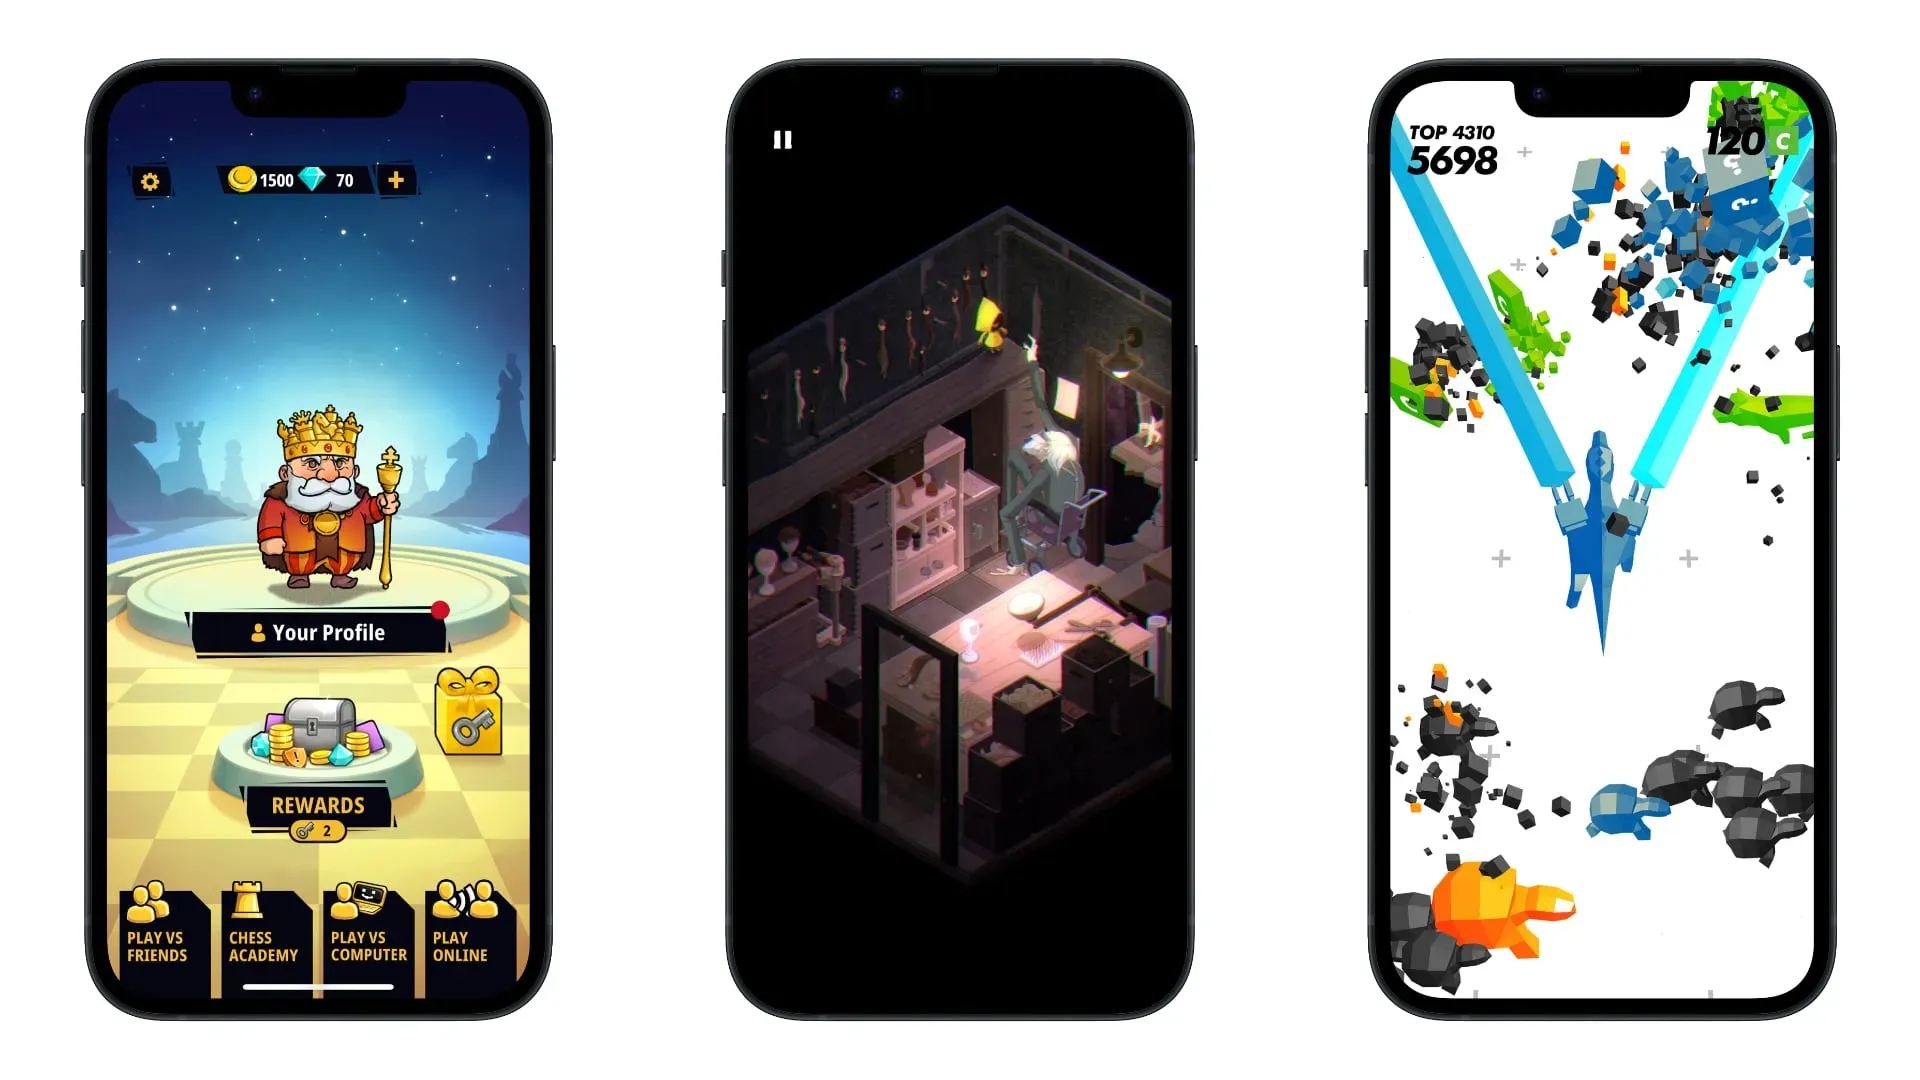 Hay capturas de pantalla de iPhone que muestran los juegos Chess Universe, Very Little Nightmare y Time Locker